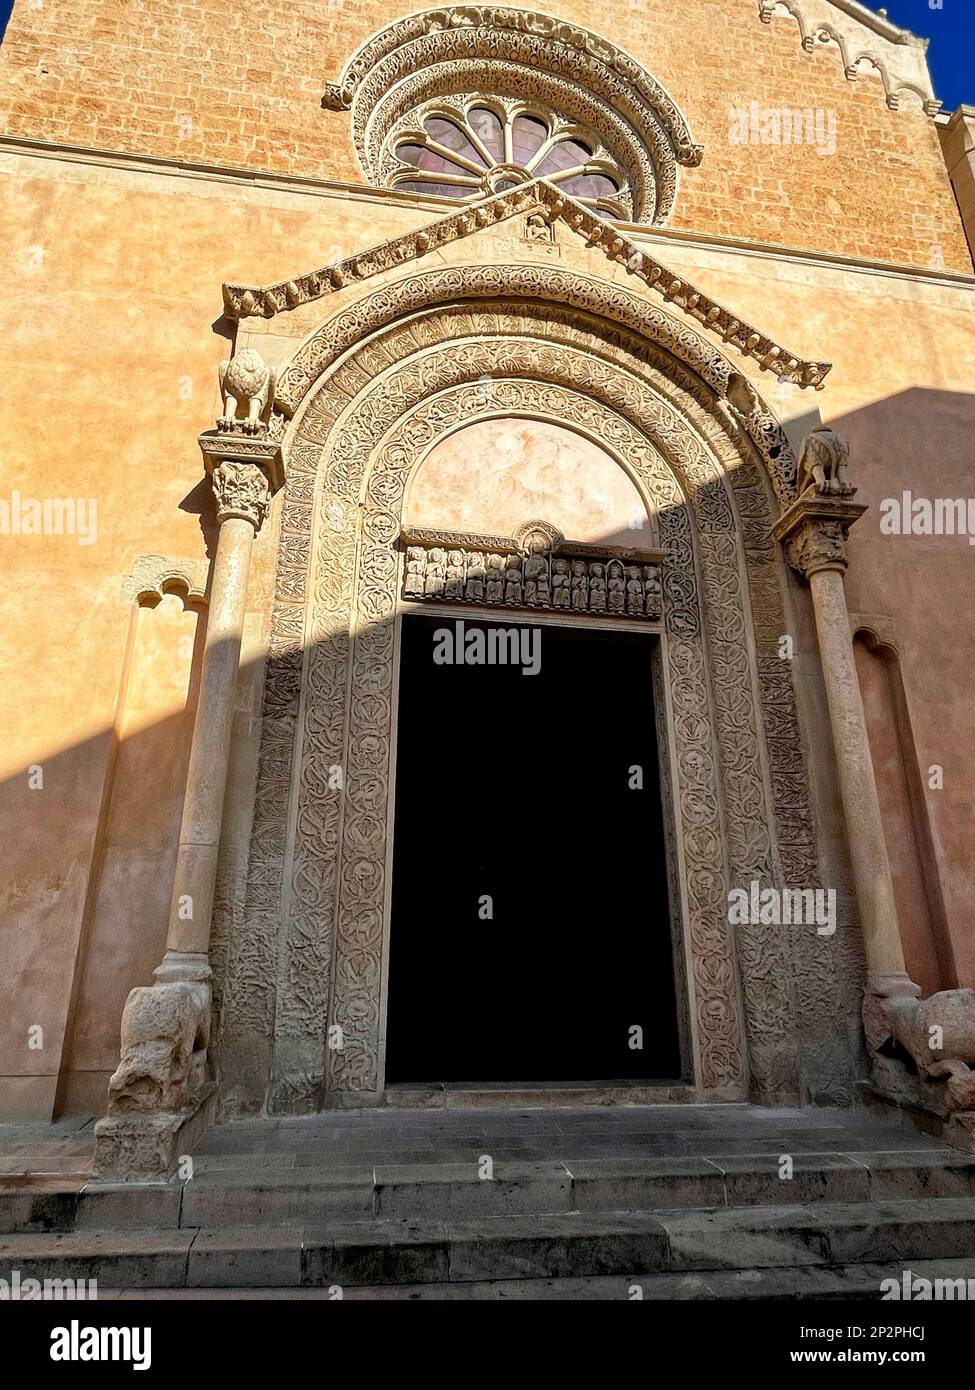 Galatina, Italy. The beautiful portal of the 14th century Santa Caterina d'Alessandria Catholic Church. Stock Photo